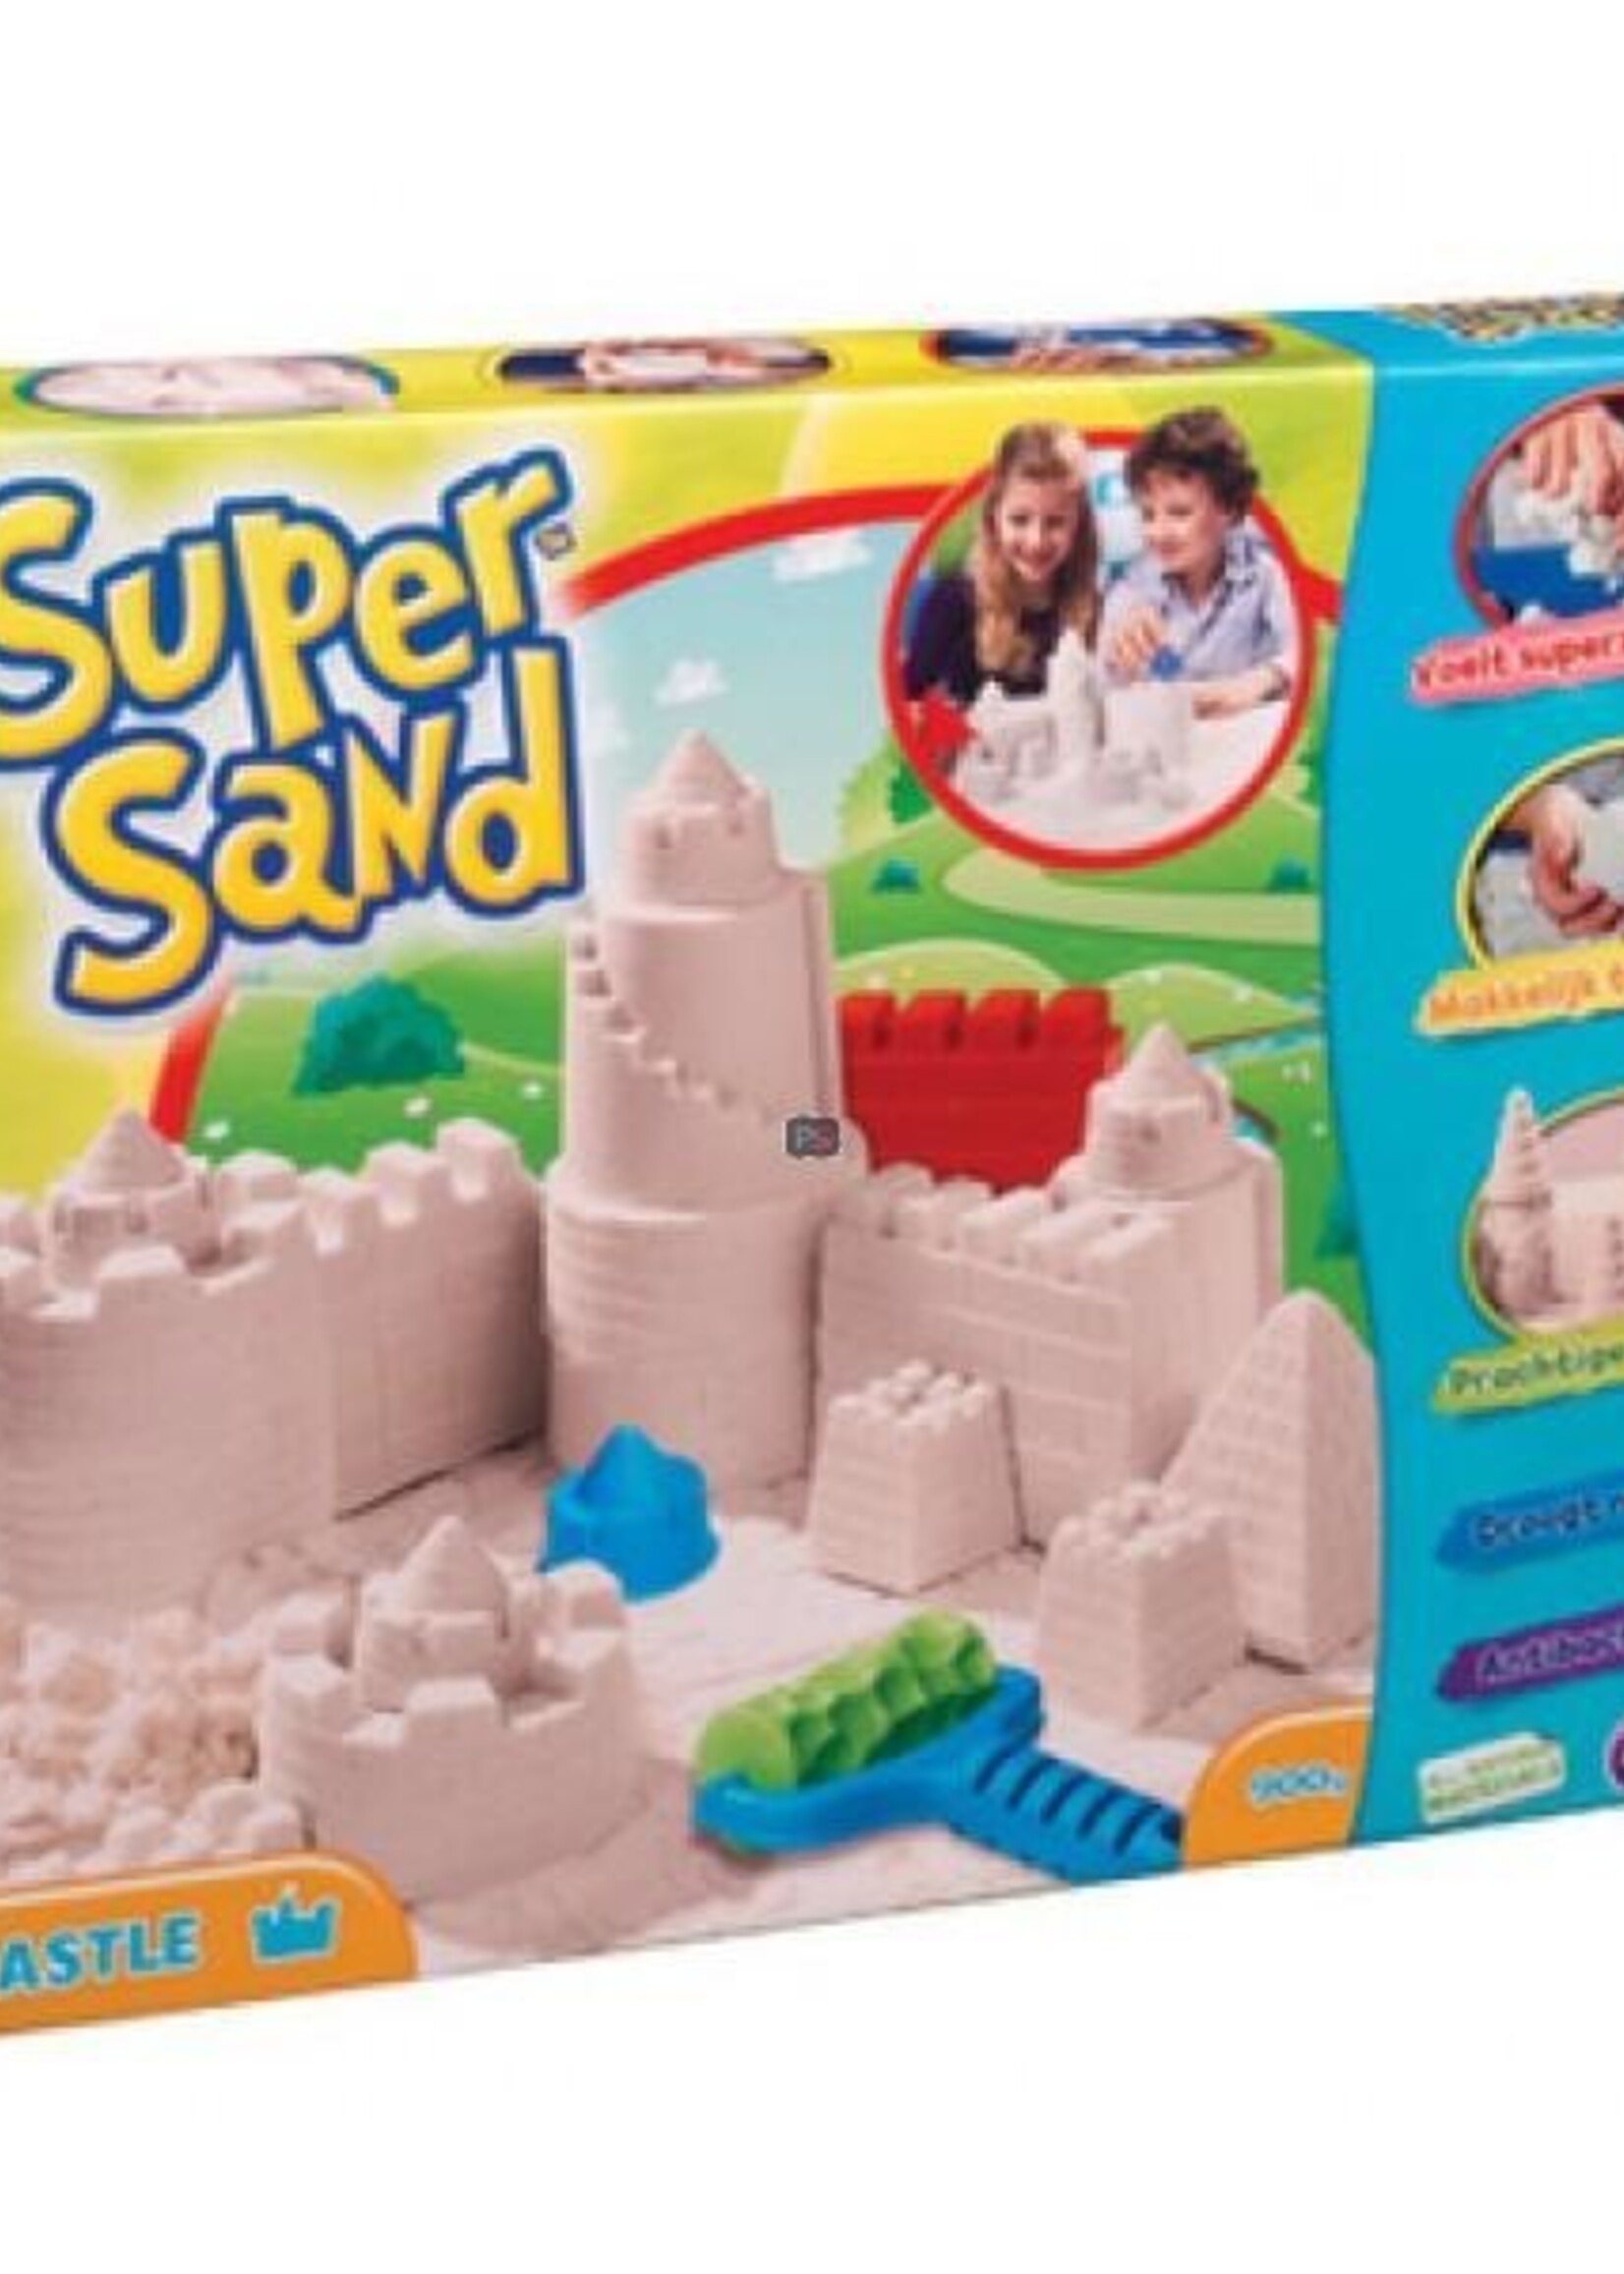 Super sand - castle - Goliath